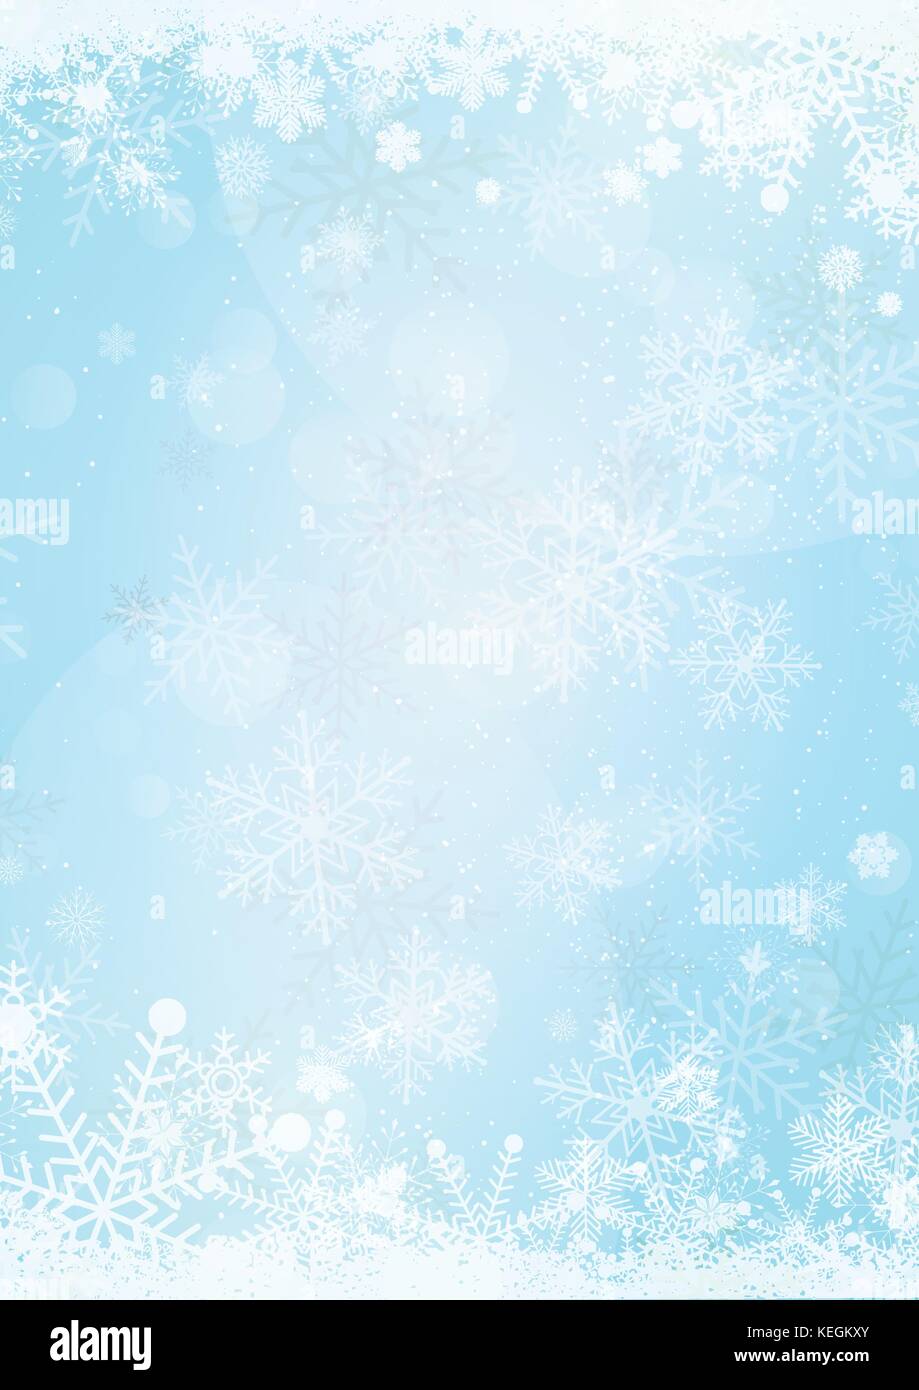 Format A3 Vertikale cafe Menü klassische Tafel Winter Weihnachten Hintergrund mit Schneeflocken und Xmas ball Grenze Stock Vektor